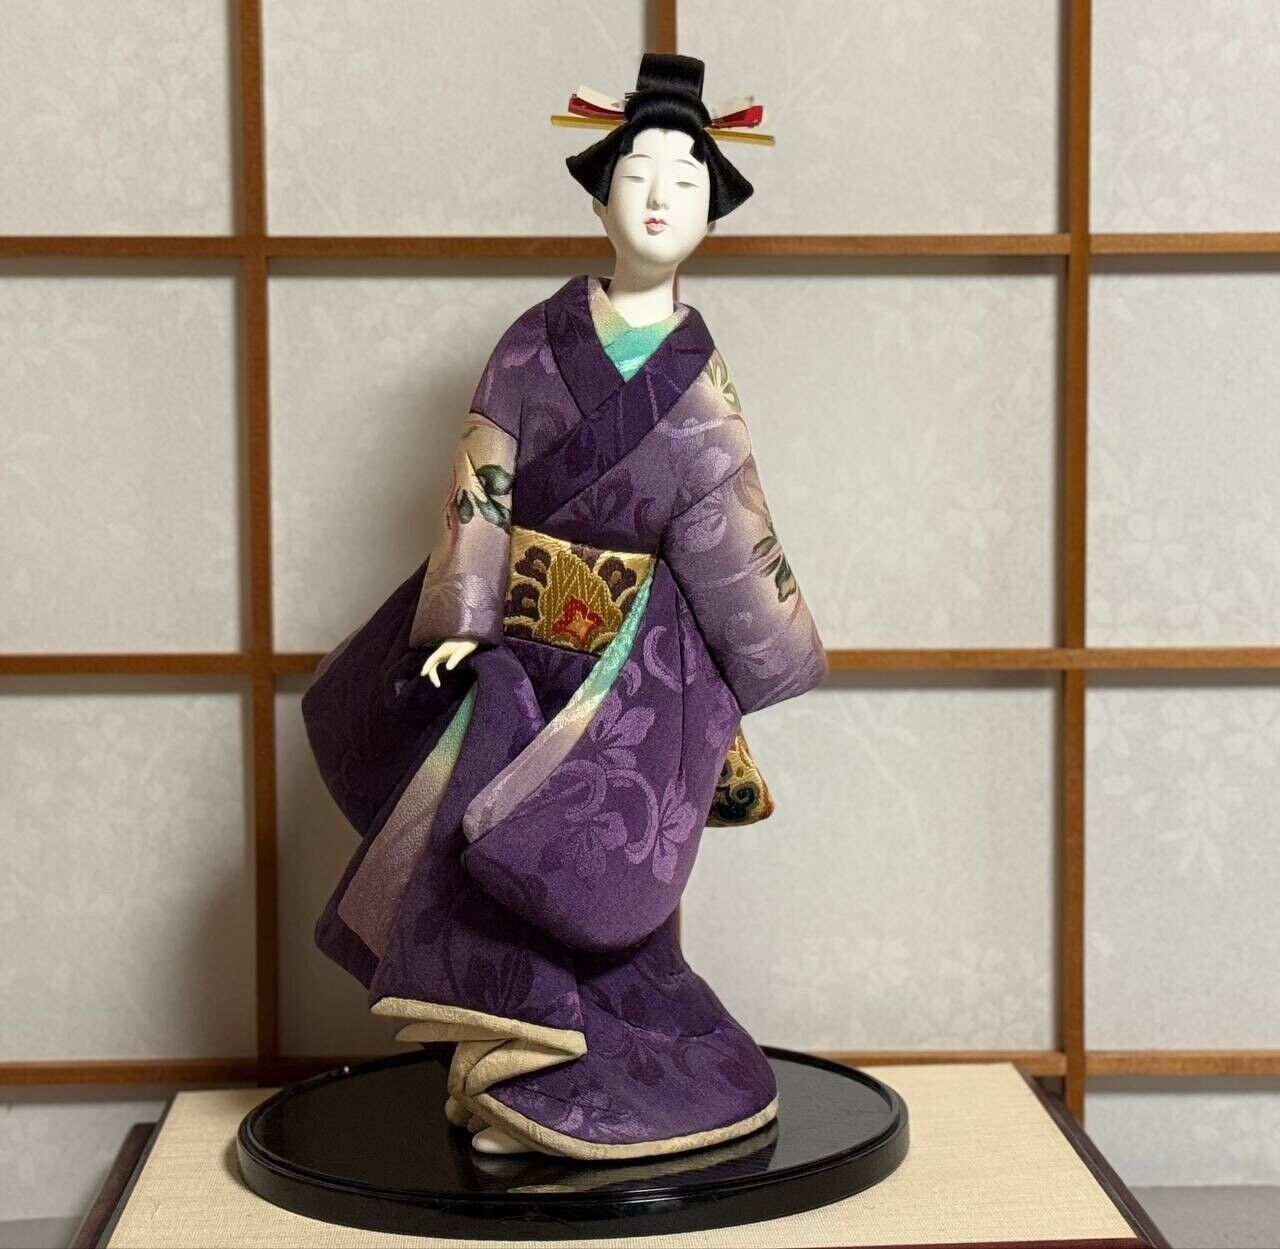 Japanese Vintage Kimekomi Doll “Dancing Lady”